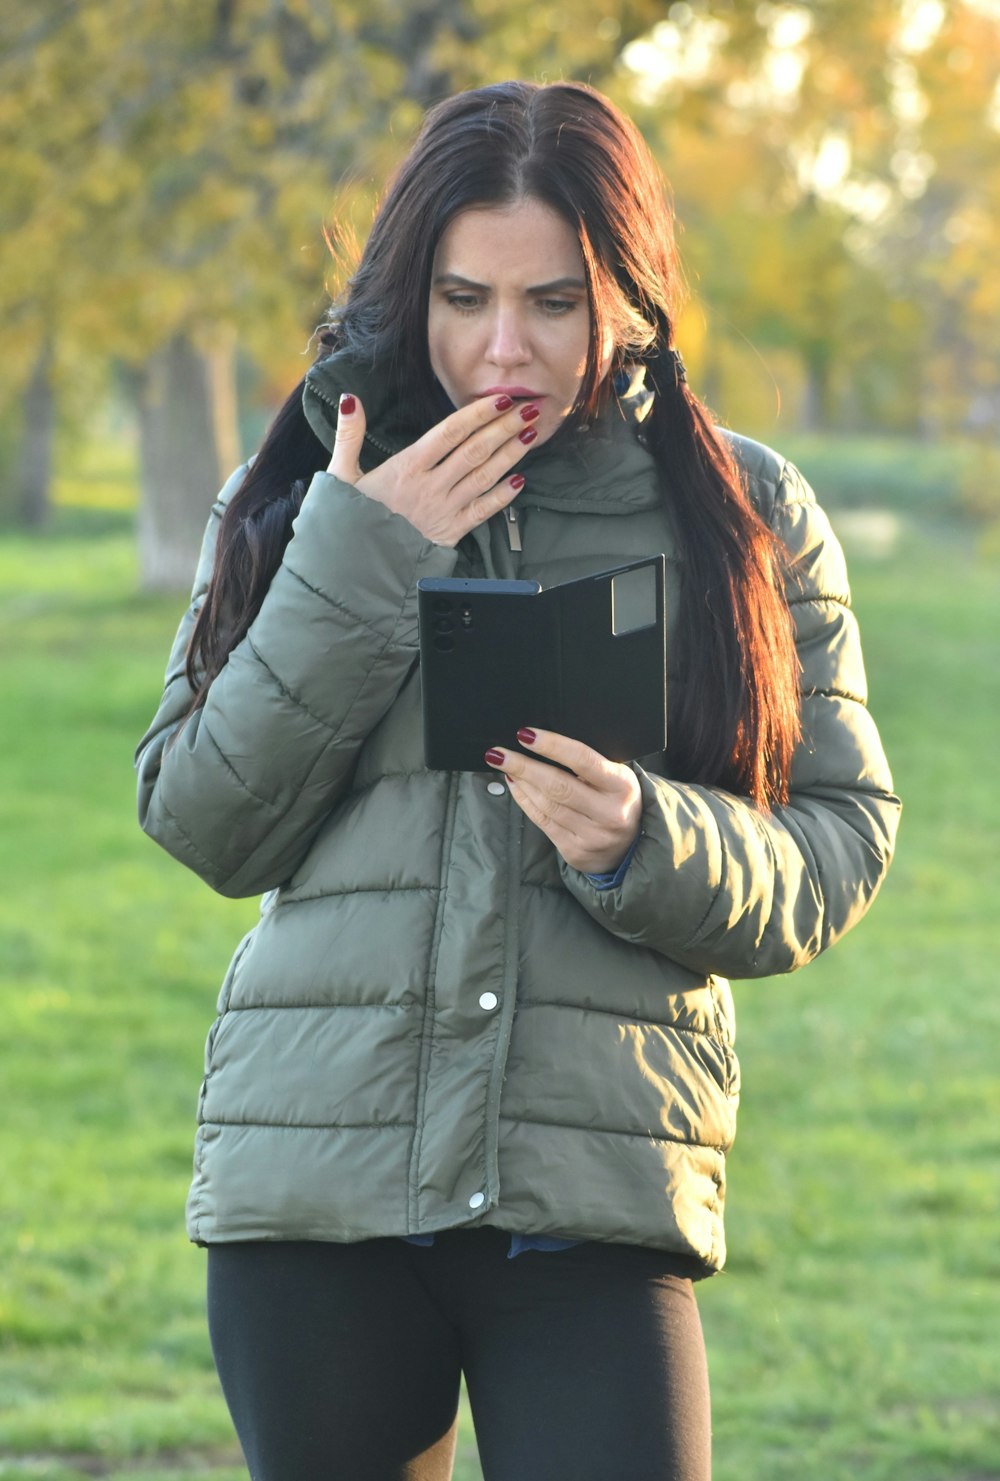 공원에 서서 태블릿을 들고 있는 여성